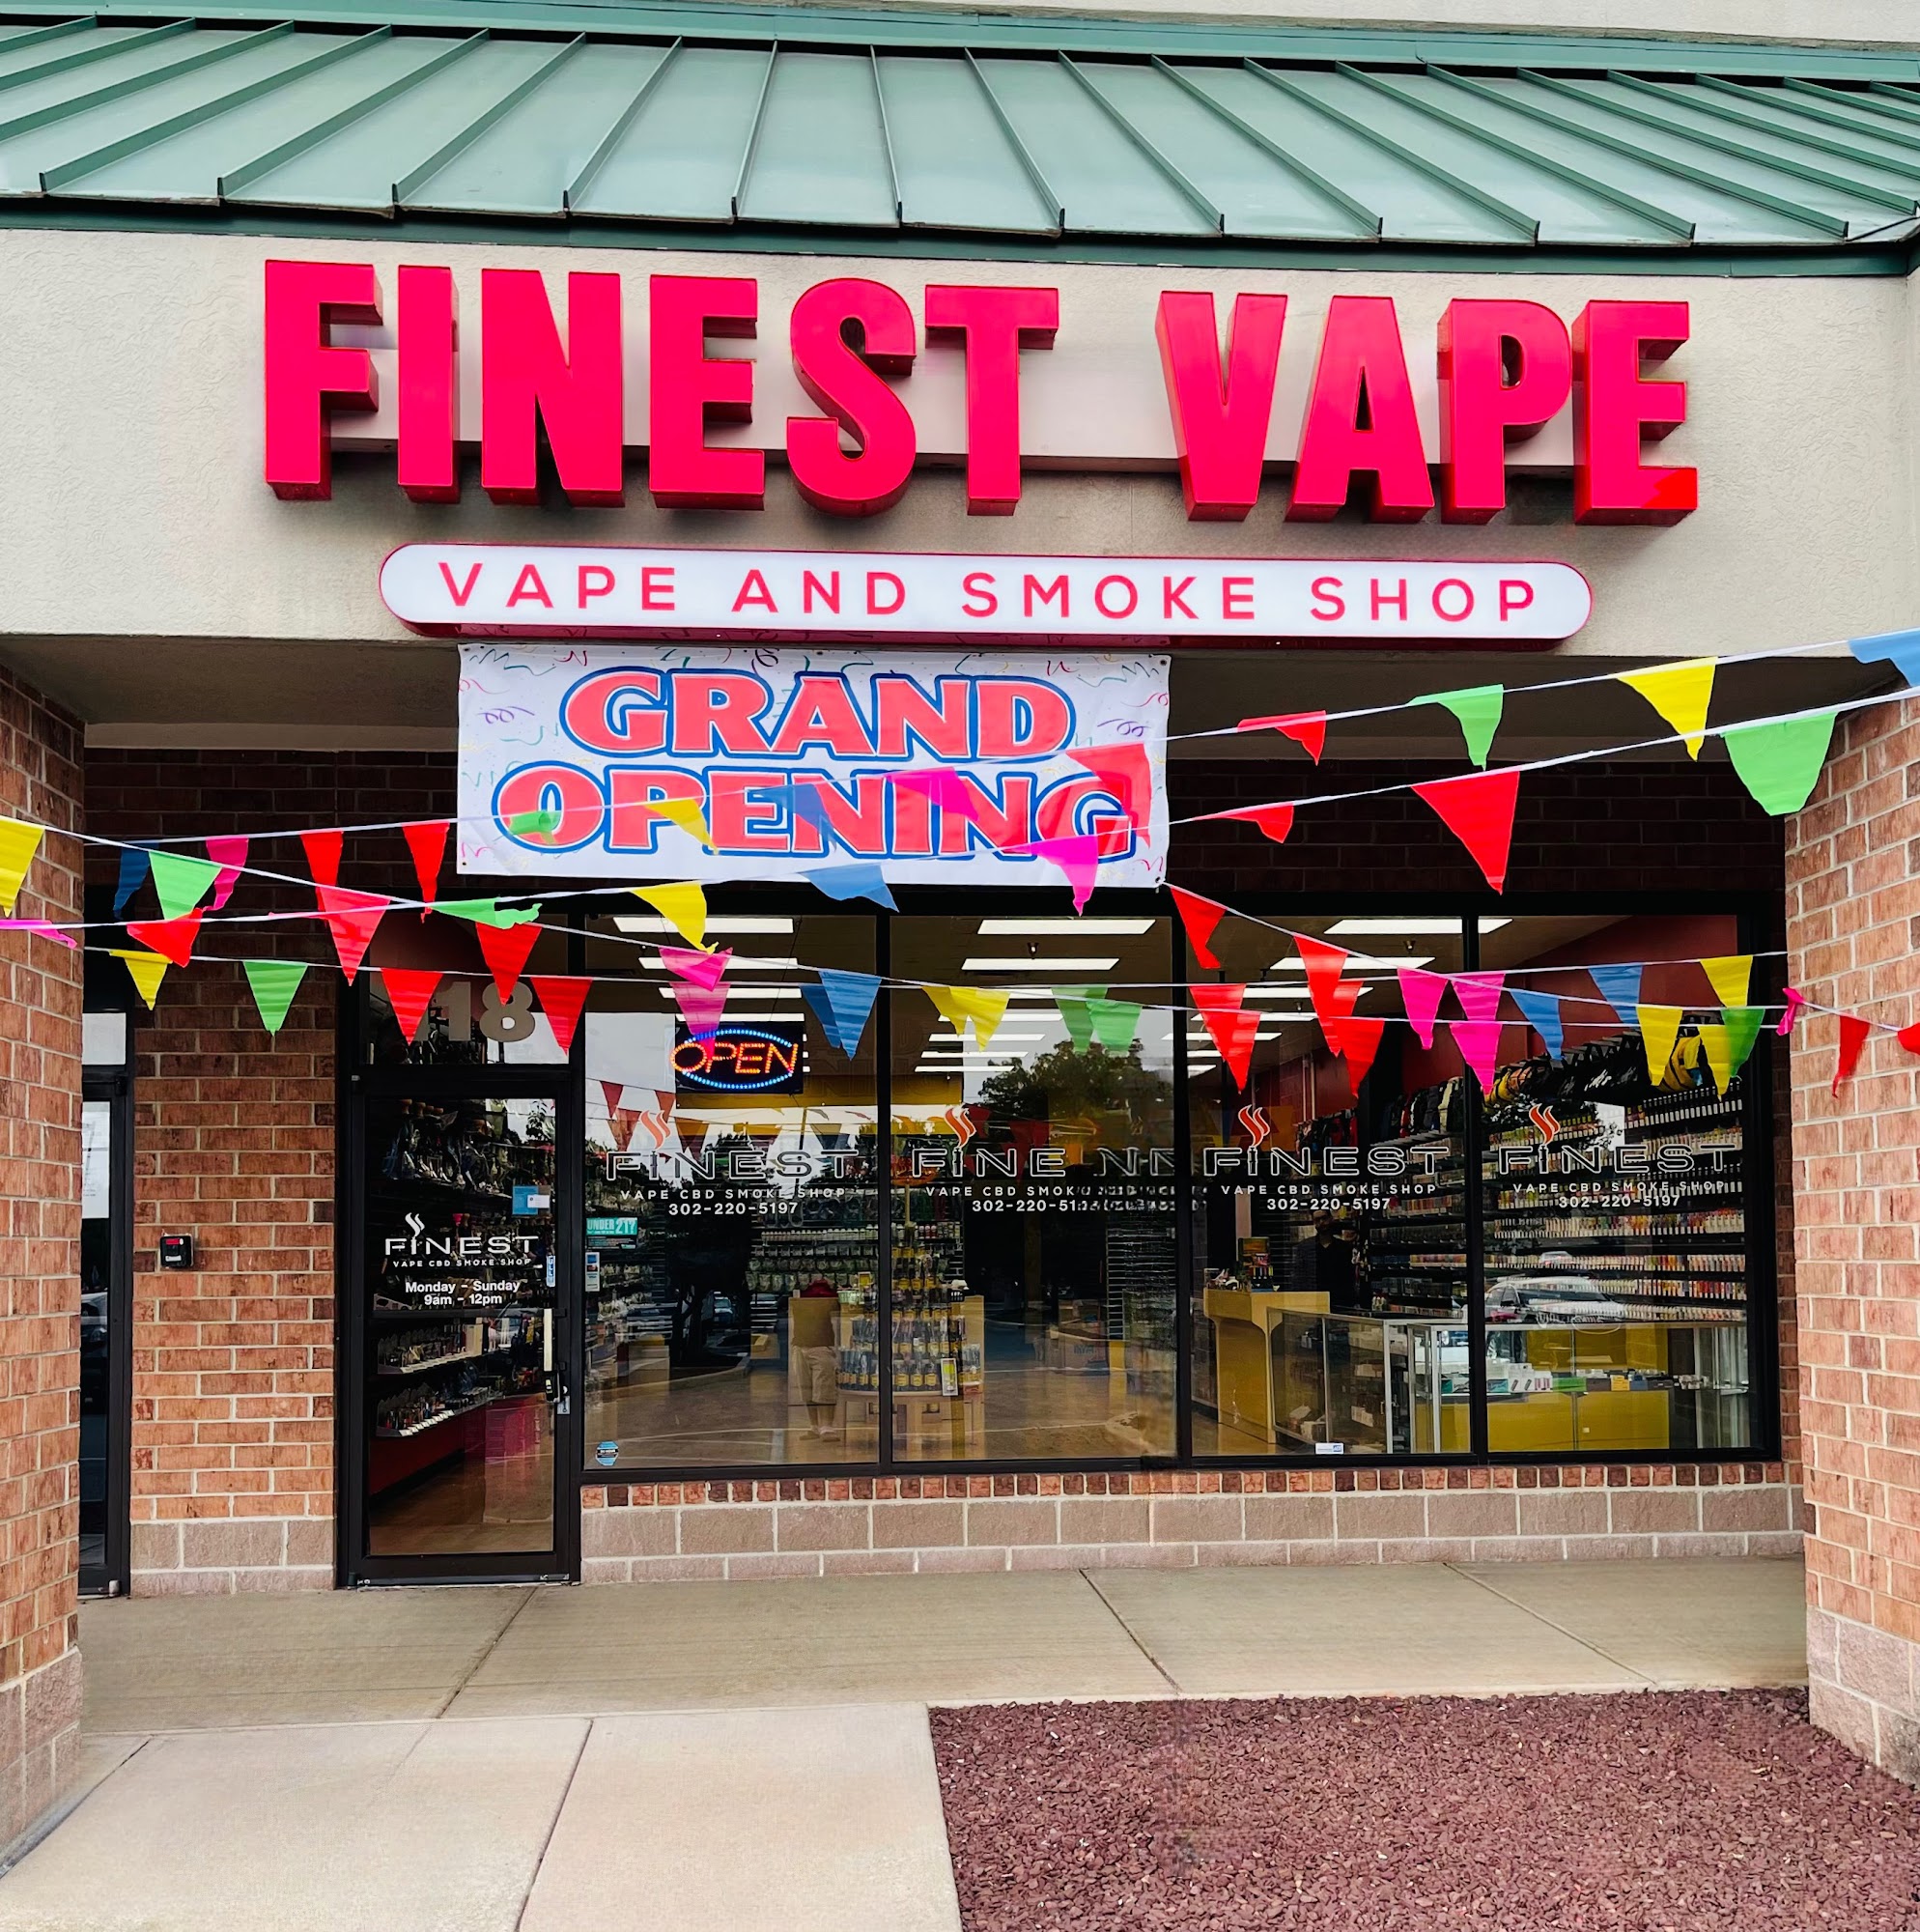 Finest Vape & smoke shop